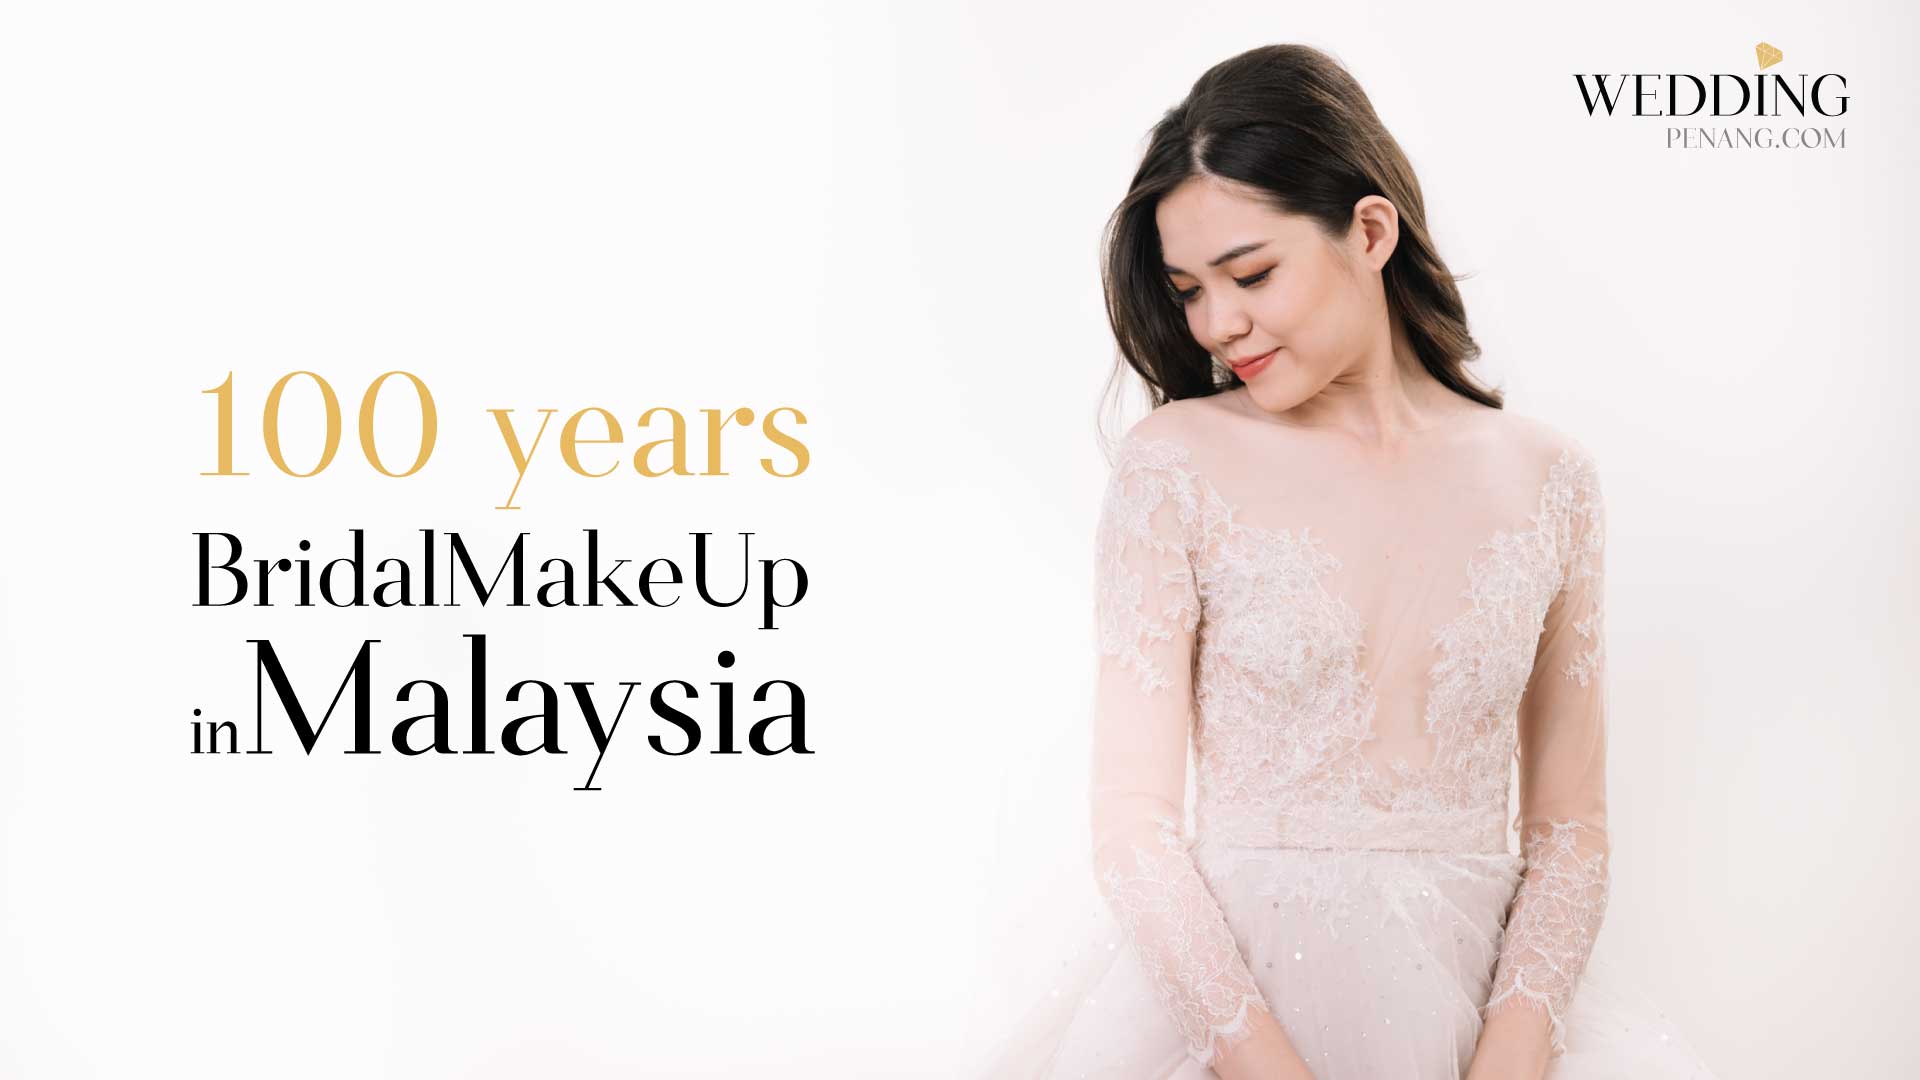 100 years of BridalMakeUp in Malaysia